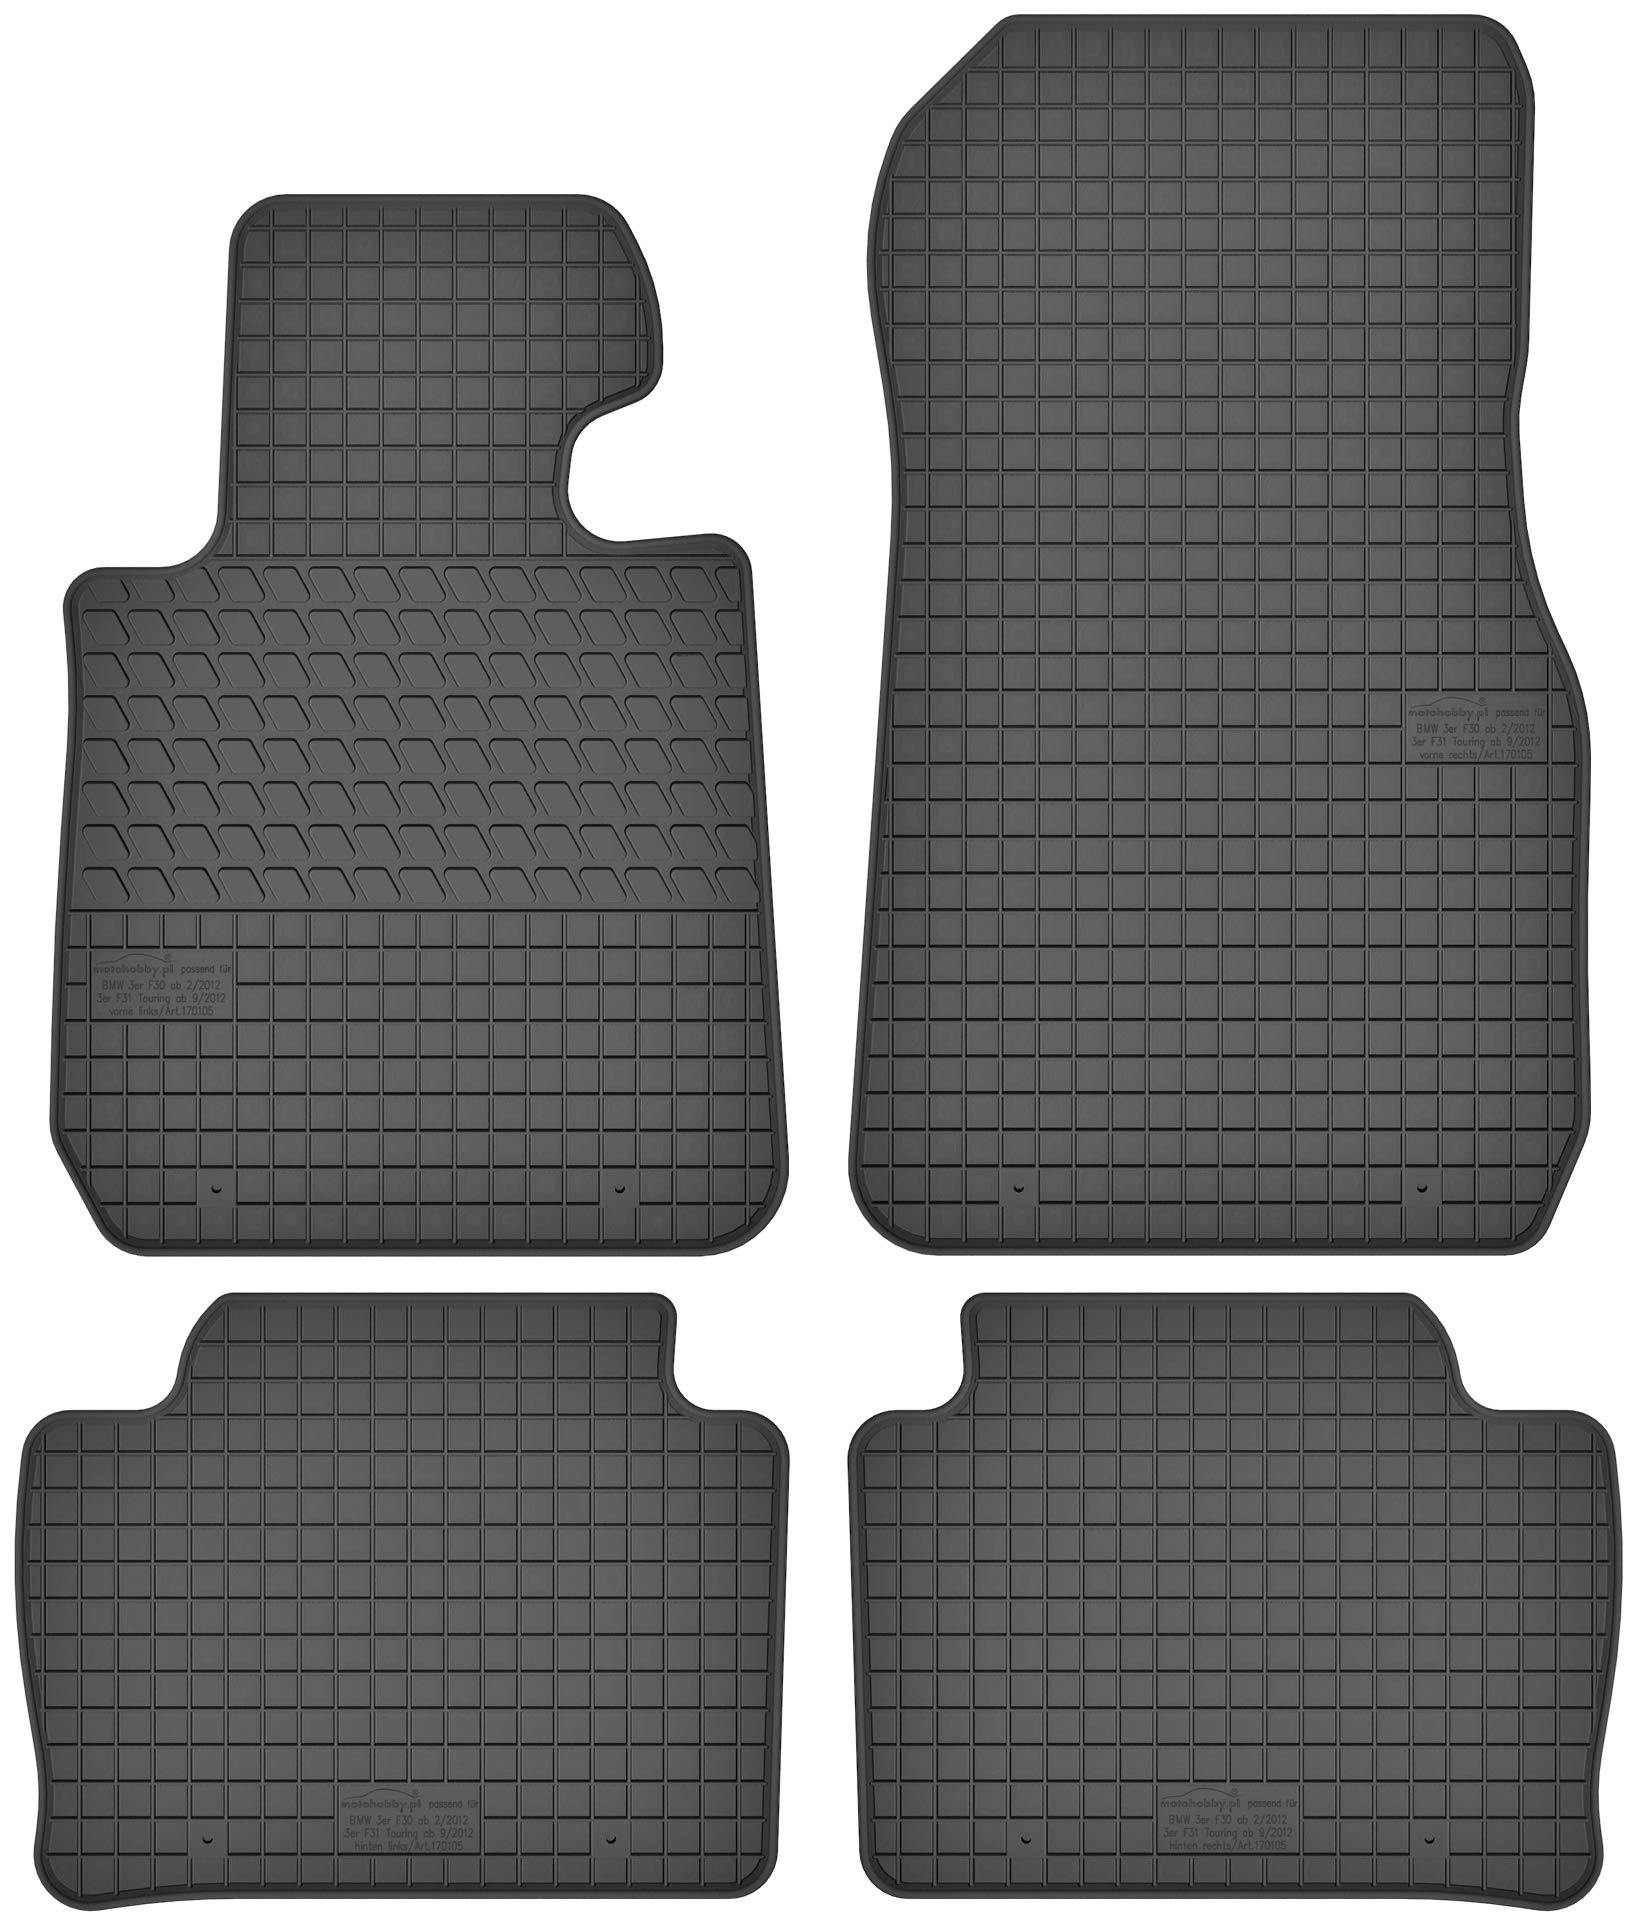 Gummimatten Gummi Fußmatten Satz für BMW 3 F30 / F31 (ab 2011) - Passgenau